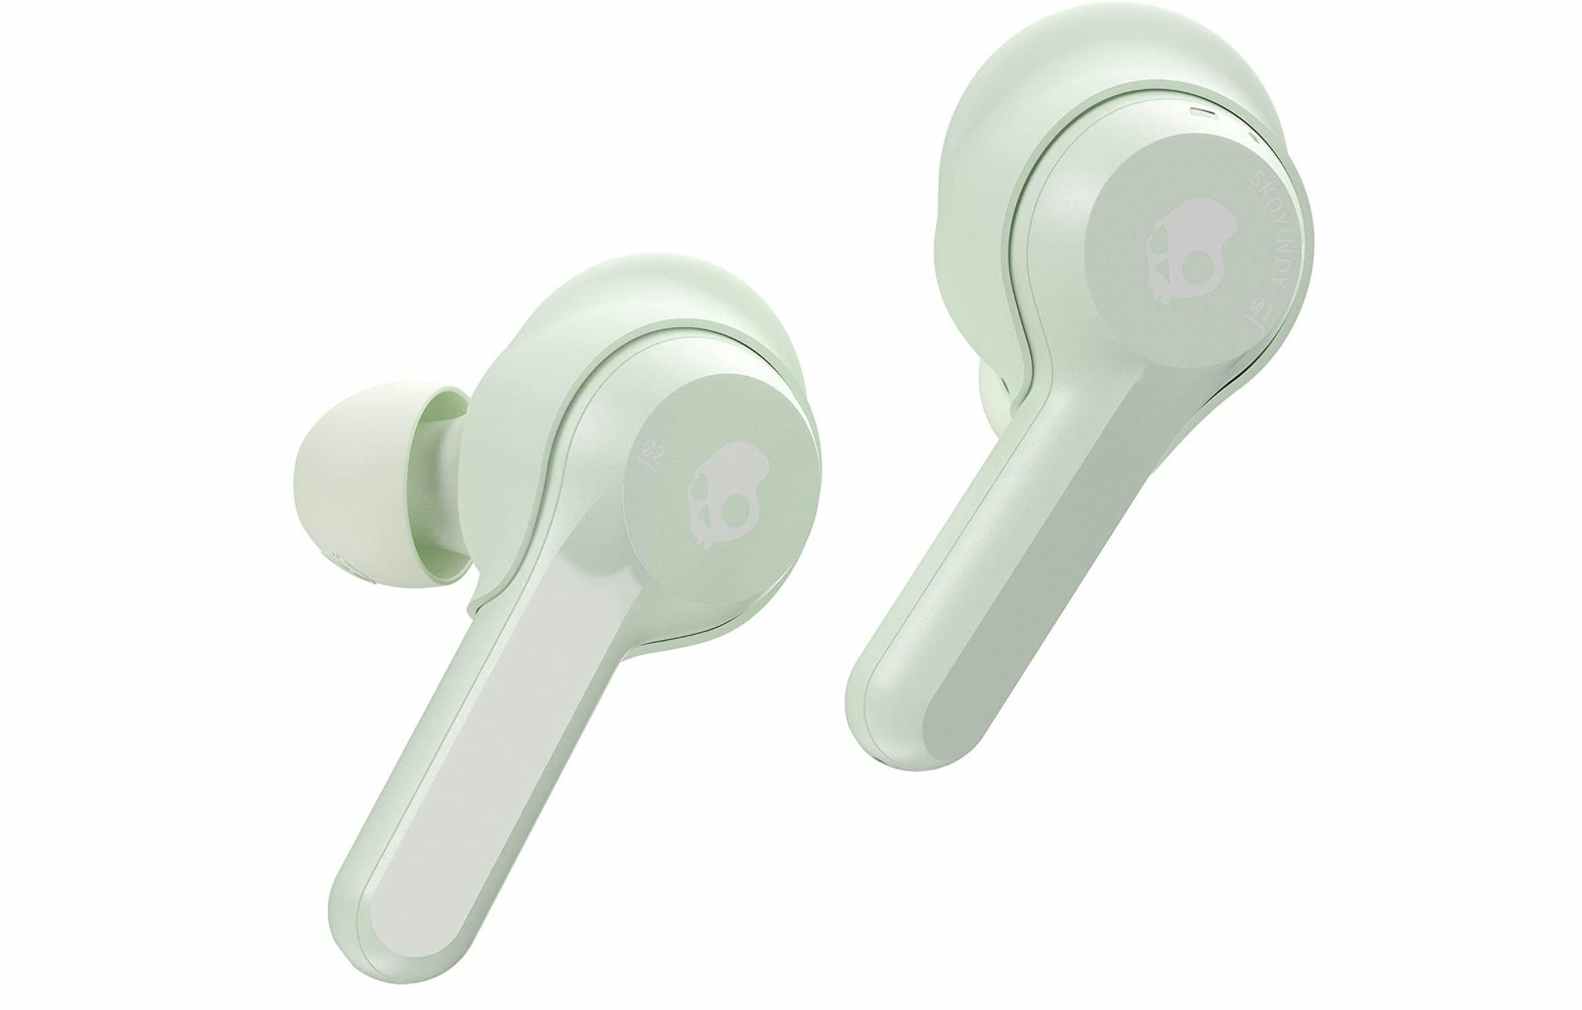 Skullcandy Indy True Wireless In-Ear Earbud